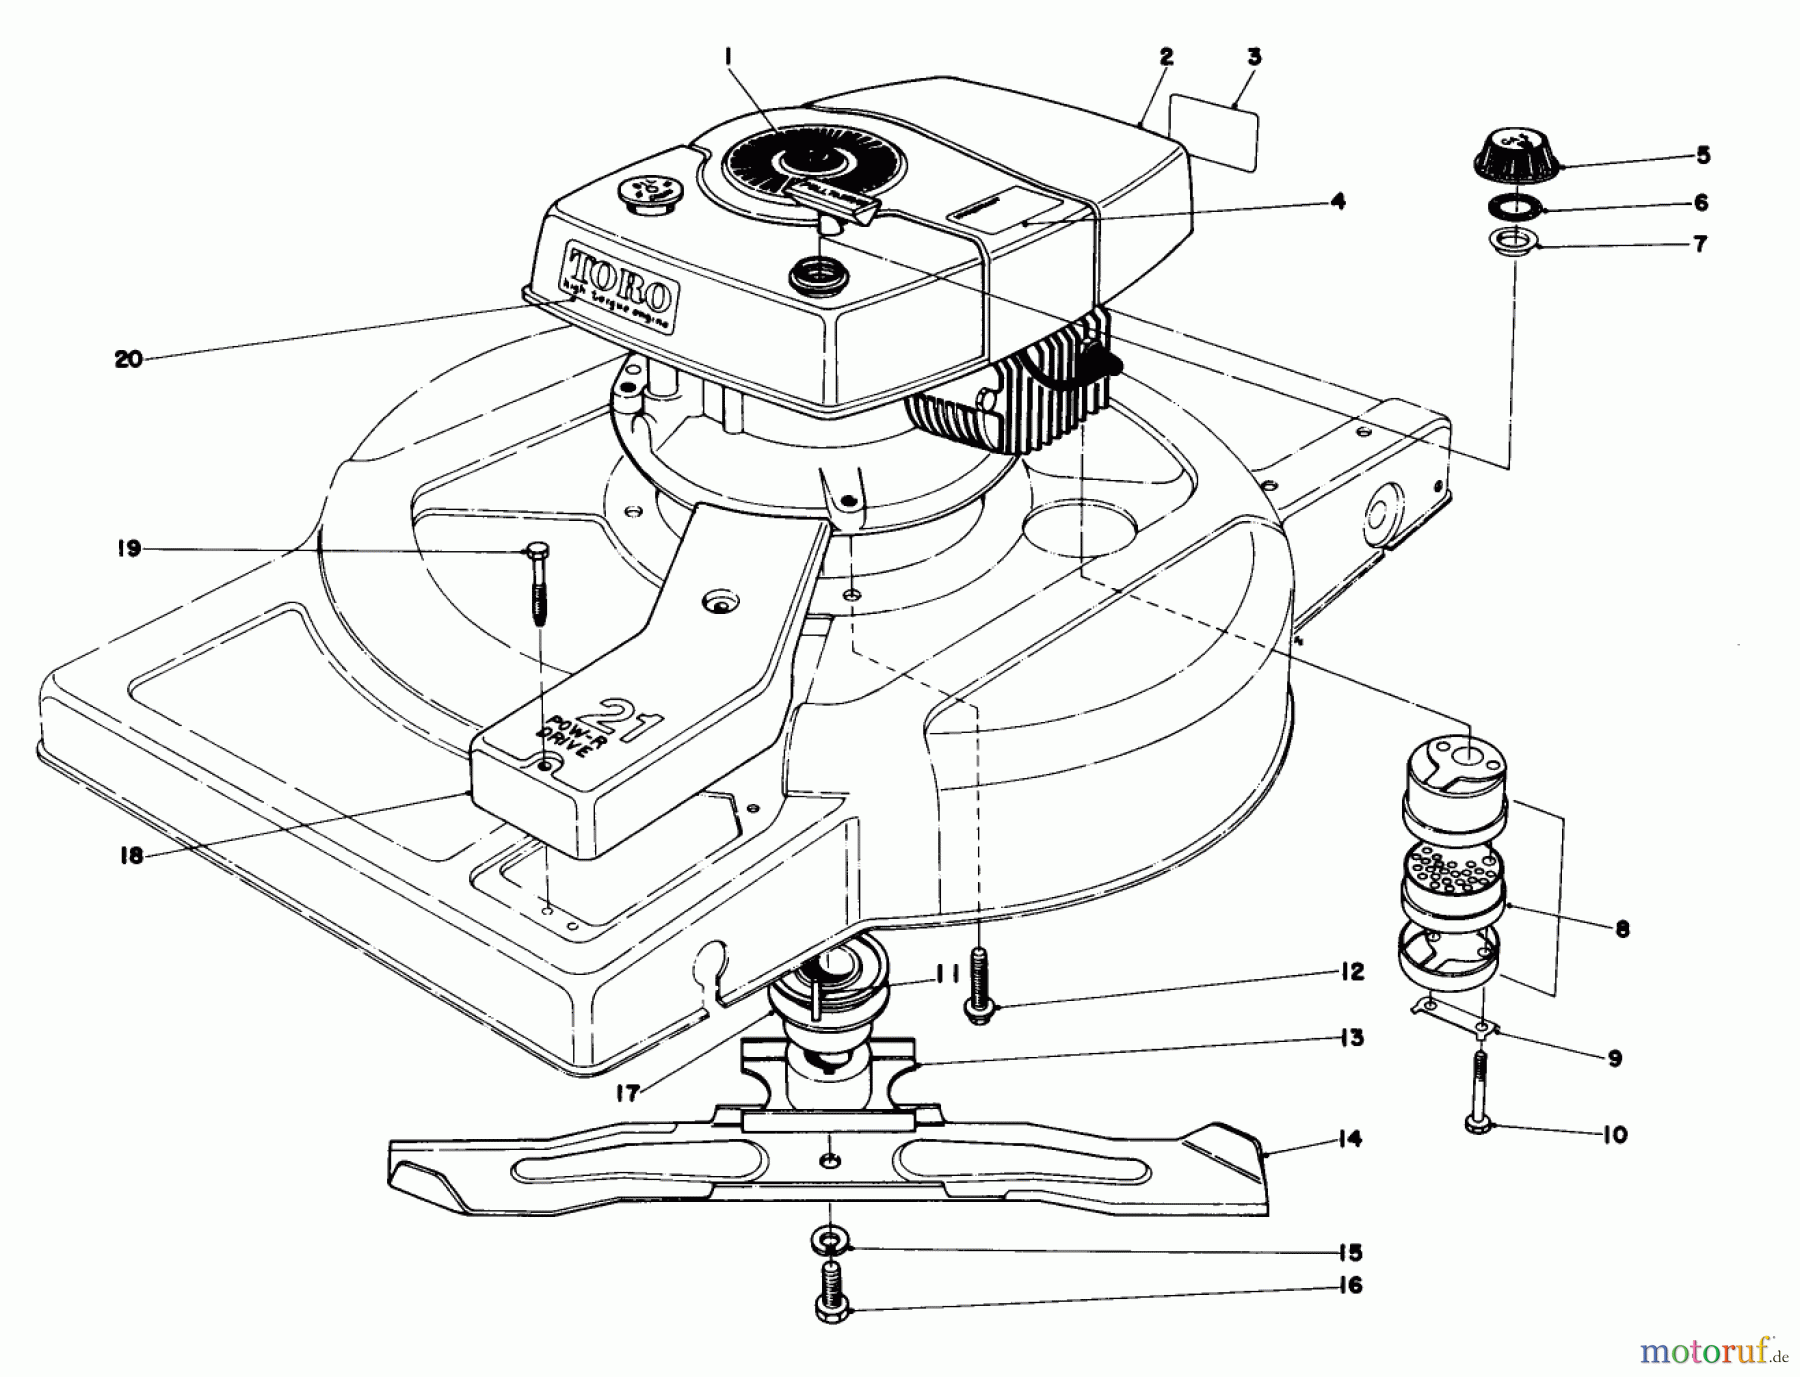  Toro Neu Mowers, Walk-Behind Seite 1 18015 - Toro Lawnmower, 1978 (8000001-8999999) ENGINE ASSEMBLY MODEL 18060